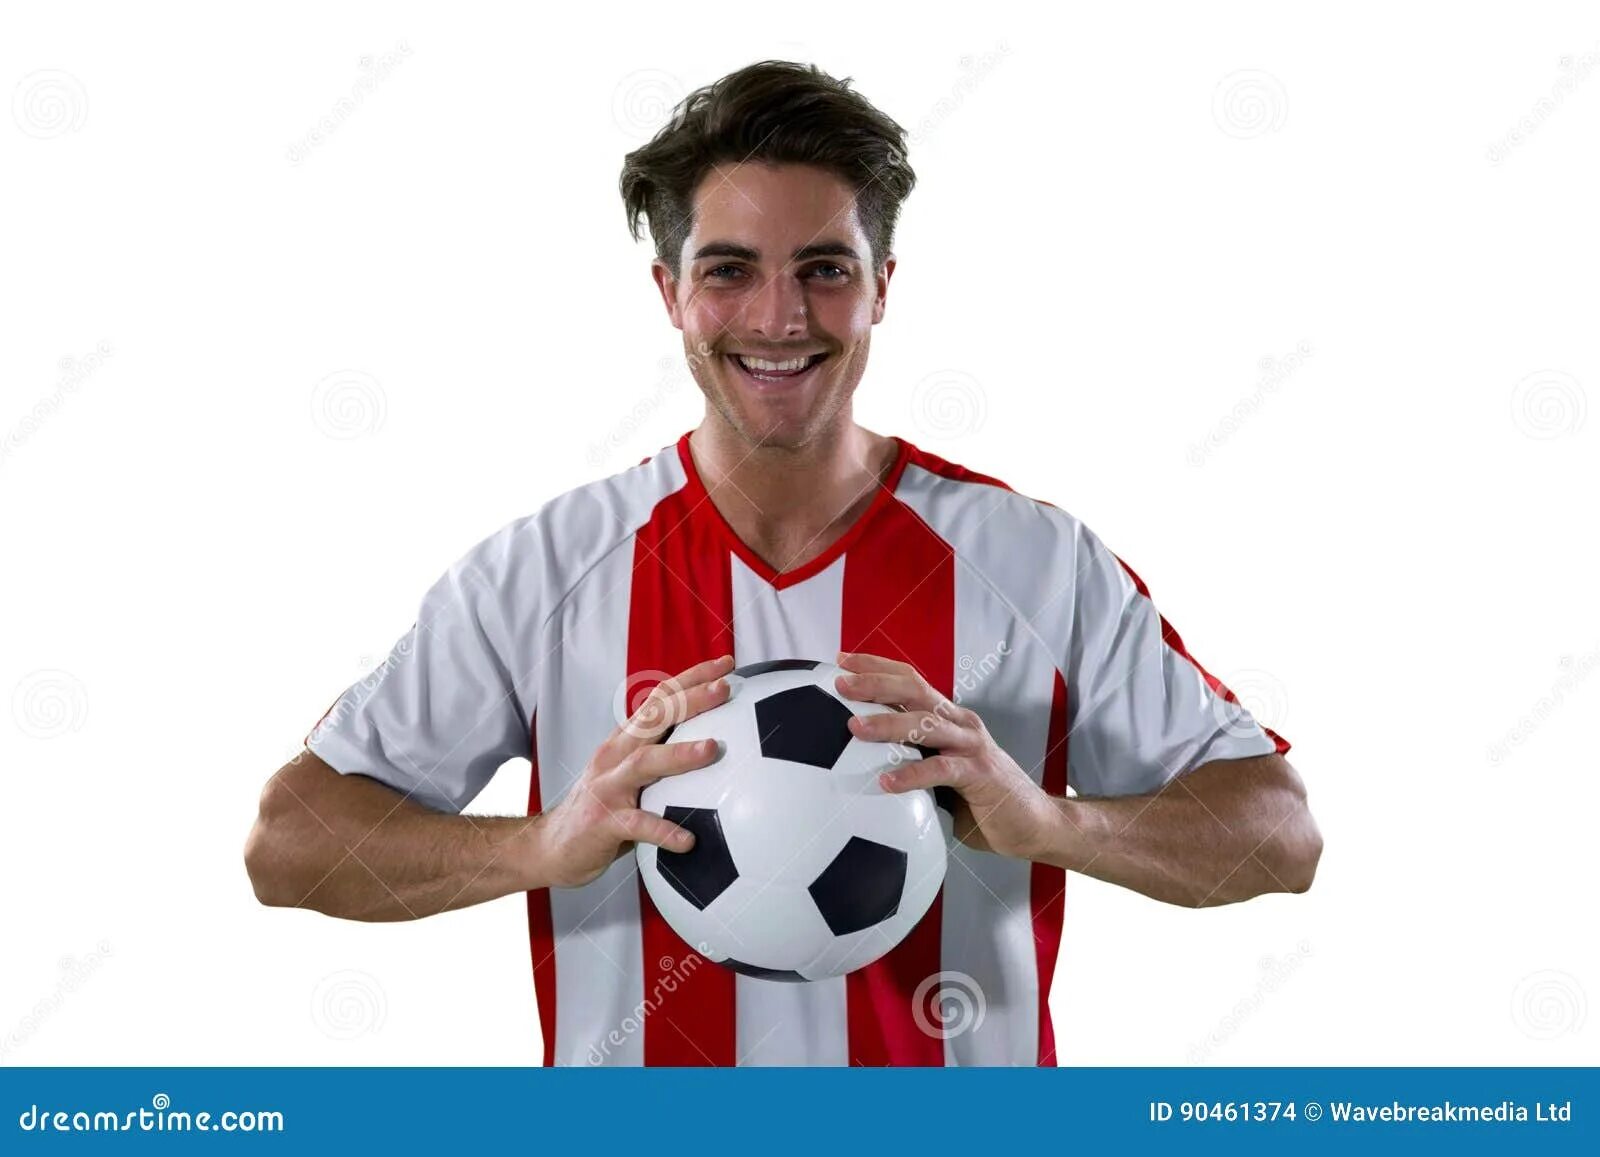 Футболист держит мяч. Футболисты держат в руках. Рука держит футбольный шарфик. Футболист держит мяч на губах.